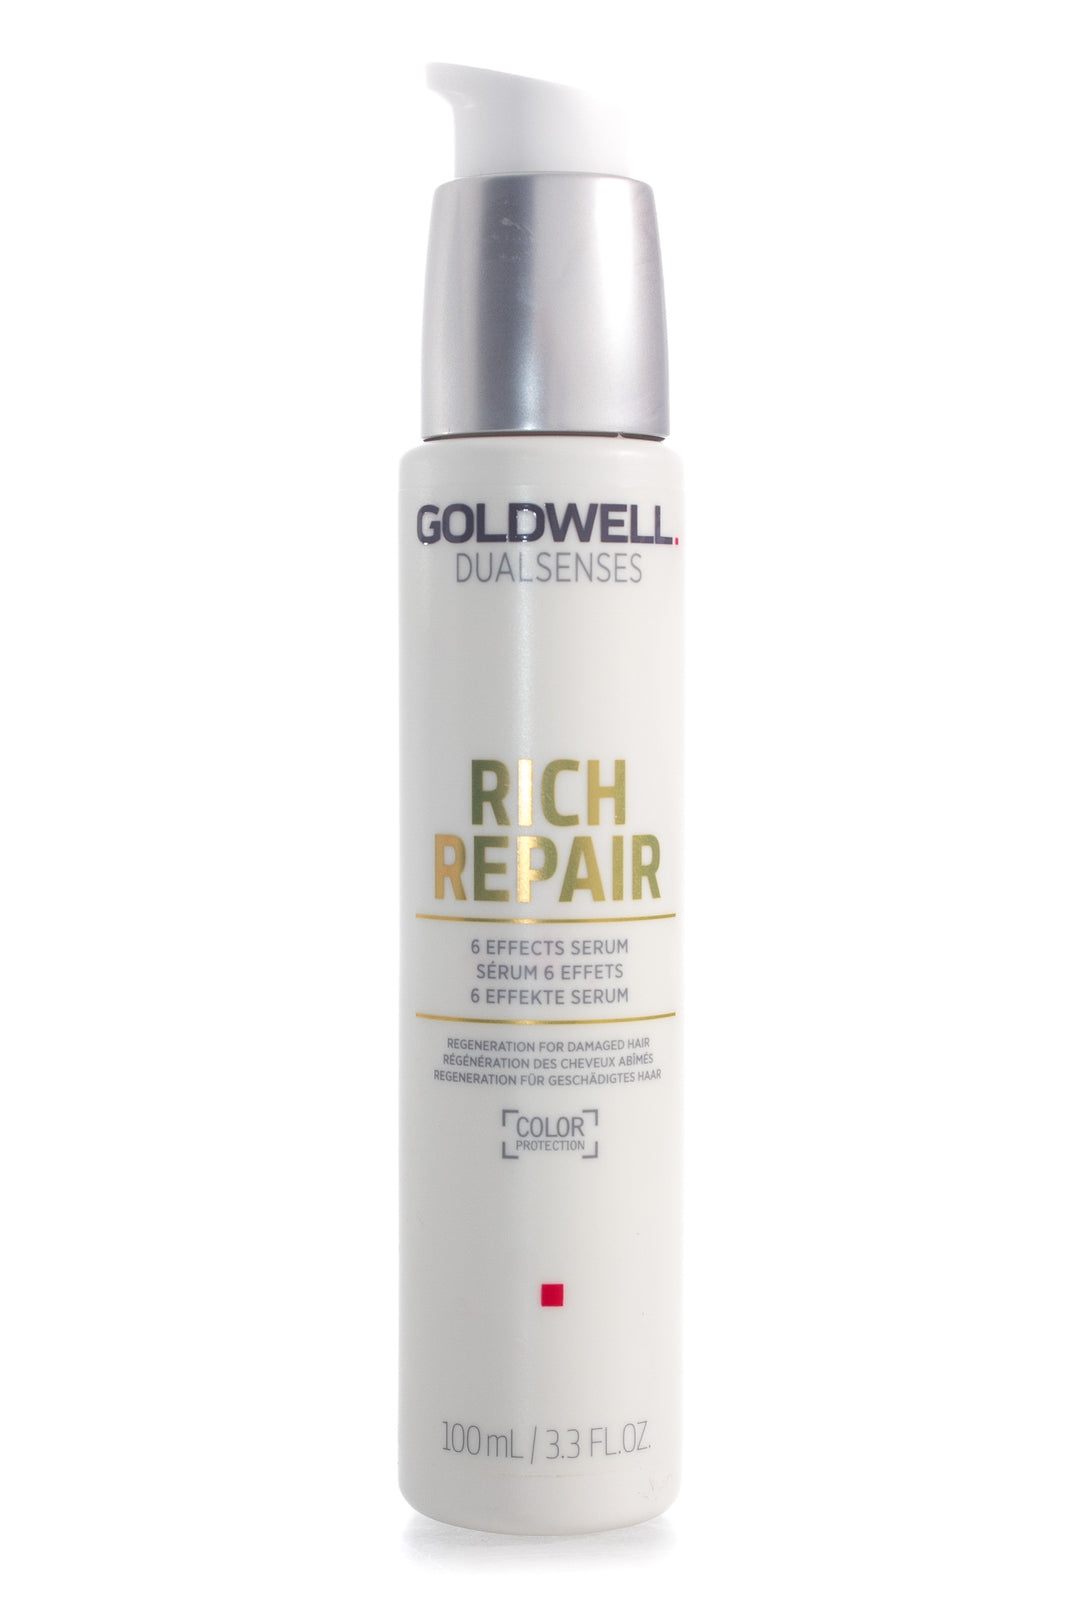 Goldwell Dual-Senses-Rich-Repair-6-effects-serum